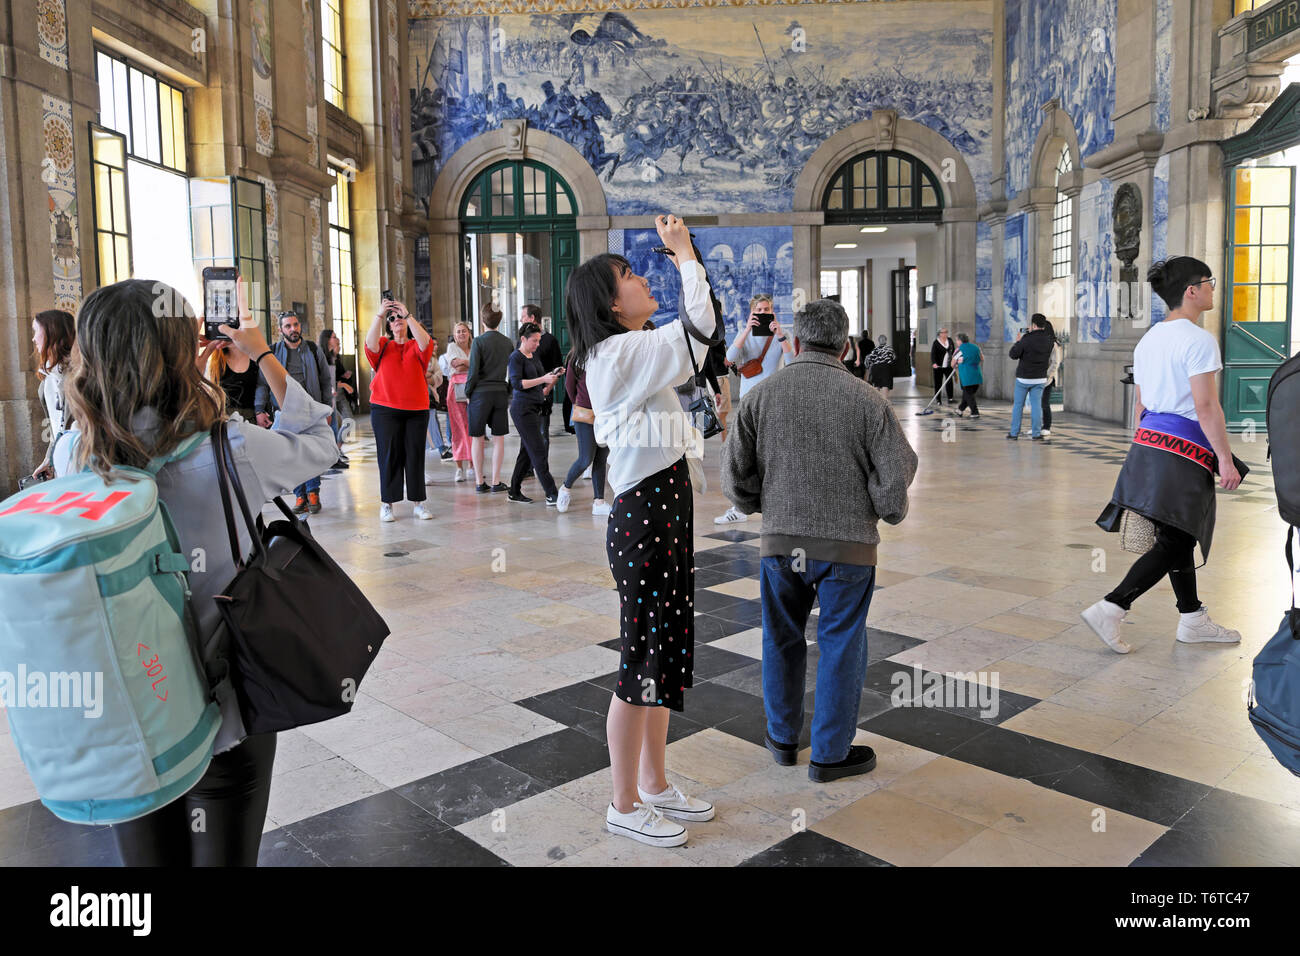 Tourisme photographiant des tuiles azulejo dans la salle centrale de la gare de Sao Bento gares ferroviaires dans la ville de Porto Portugal Europe KATHY DEWITT Banque D'Images